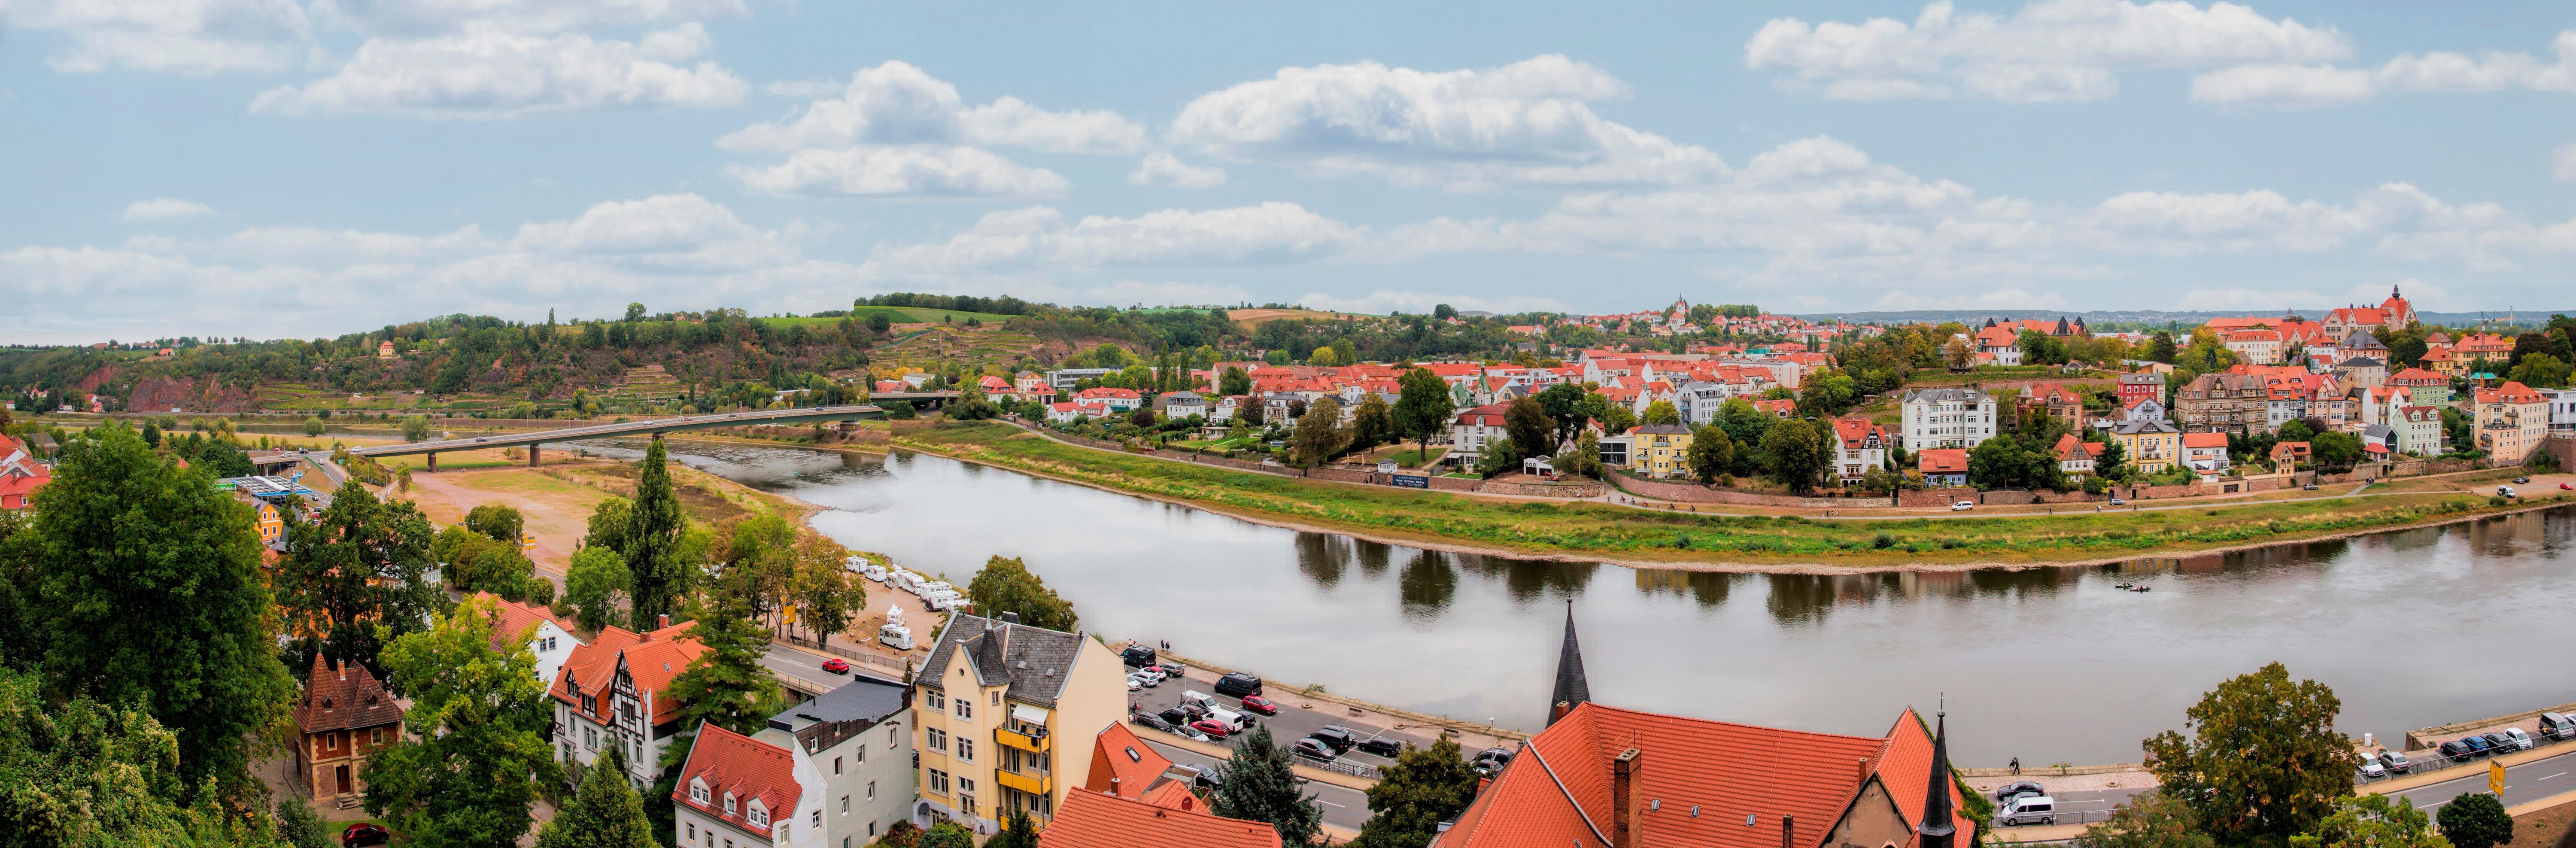 Der Elbradweg startet bereits in Prag. Von dort kannst du über Dresden und Hamburg bis rauf nach Cuxhafen ans Meer fahren.